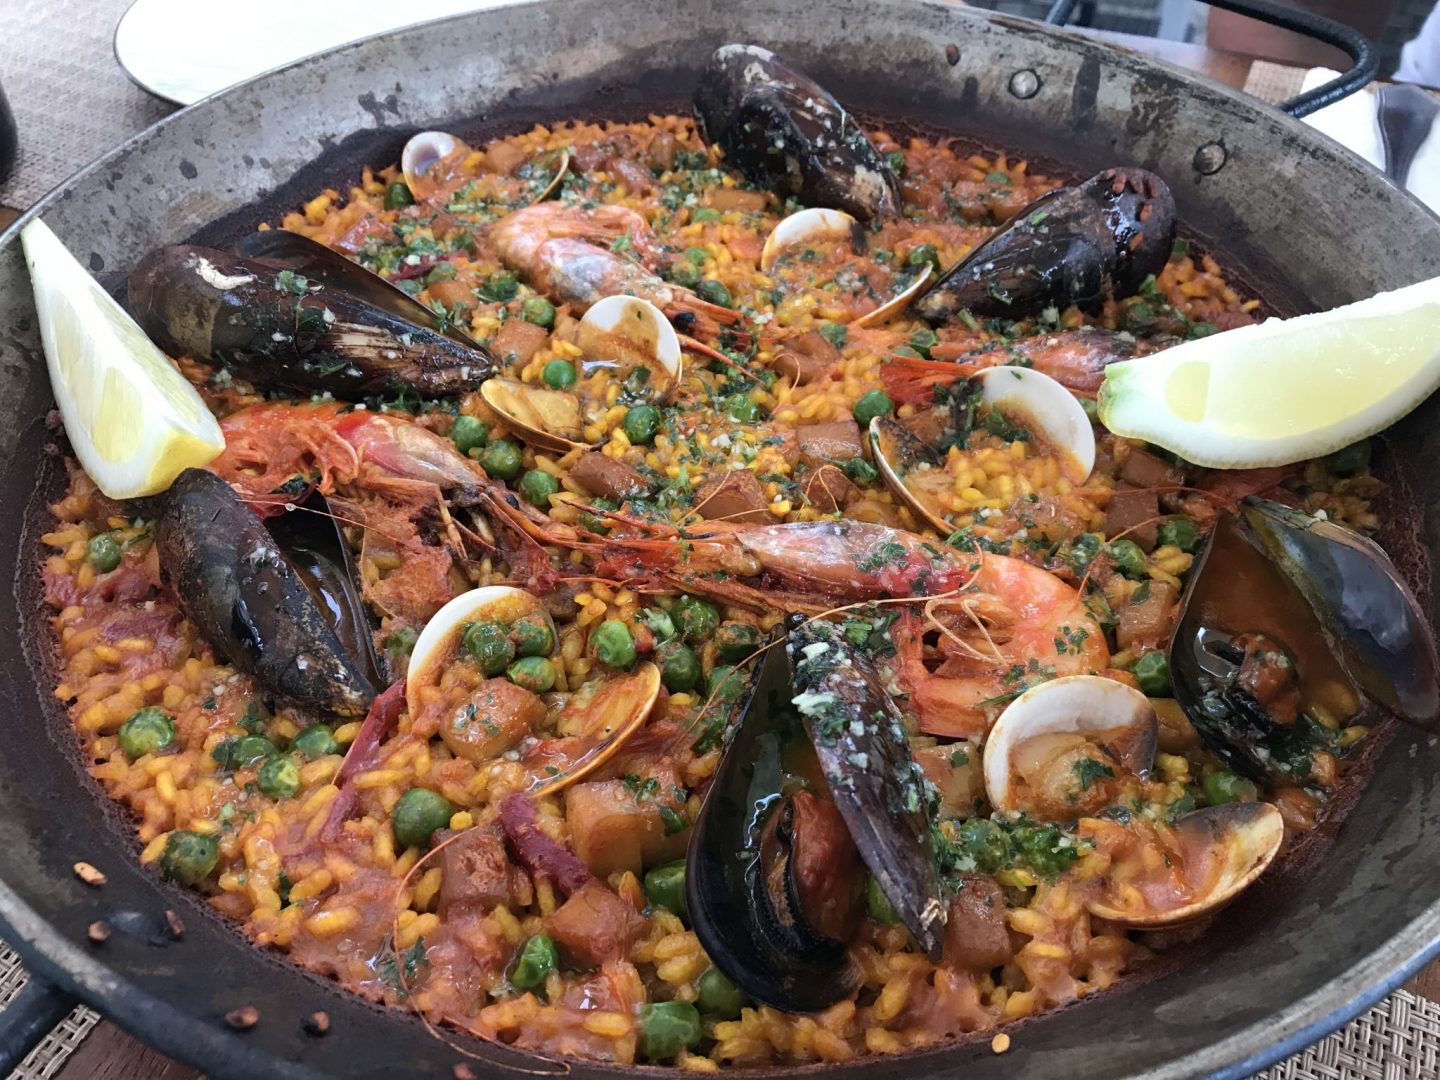 Erfahrung Bewertung Kritik Foodblog Sternestulle Paella mit Meeresfrüchten Restaurant Balear Port de Soller Mallorca